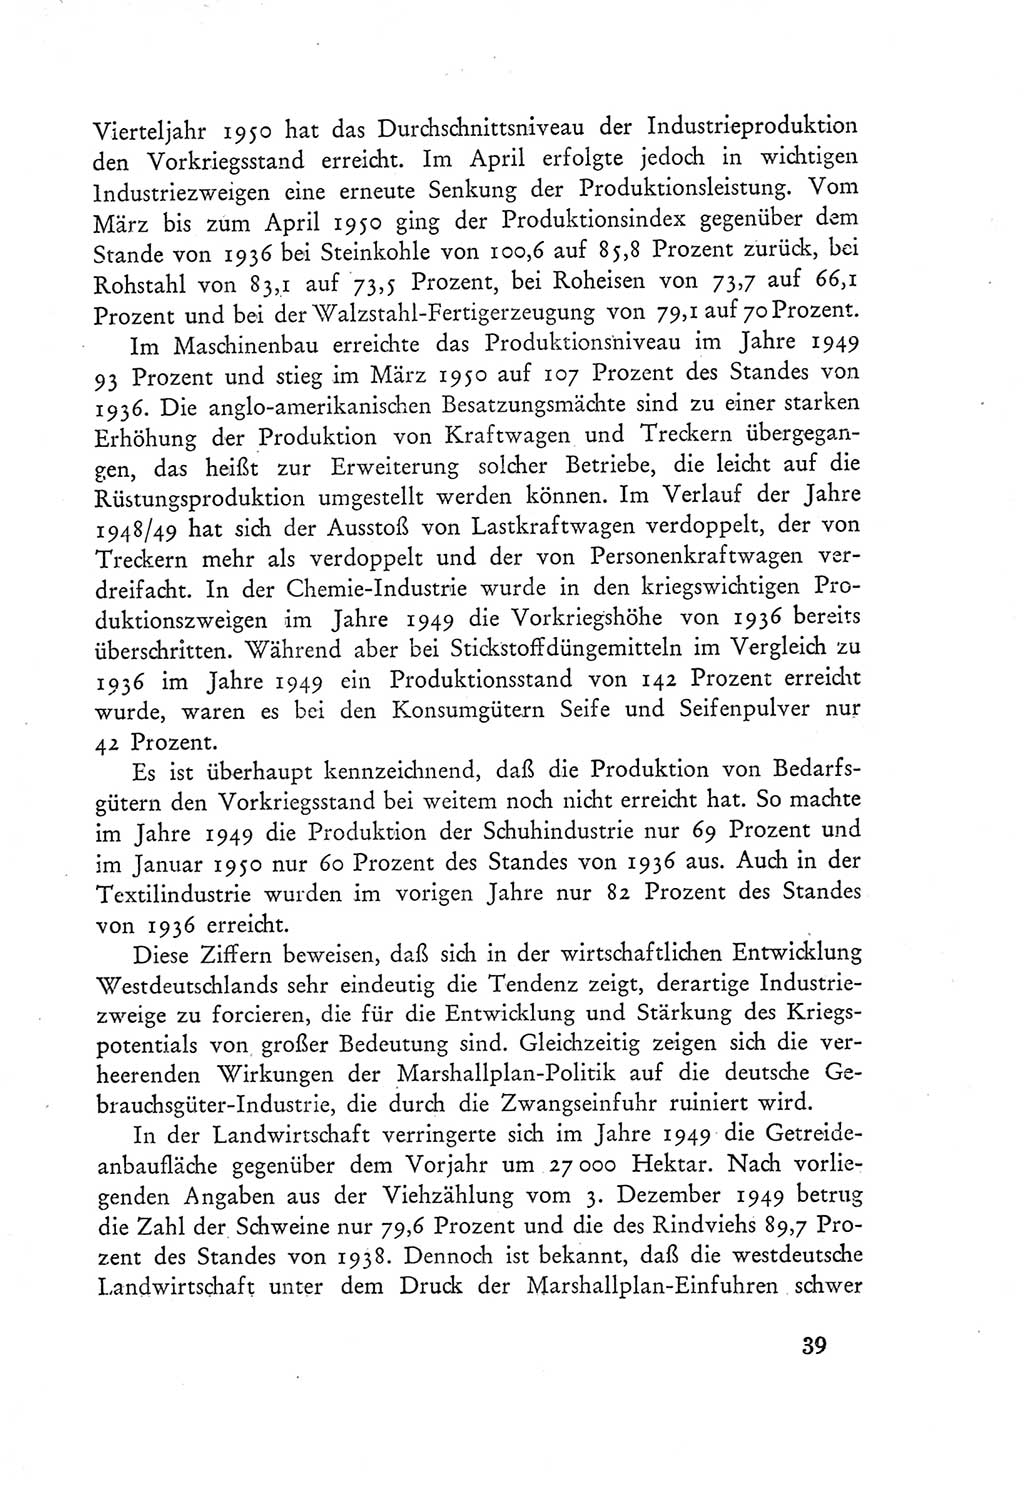 Protokoll der Verhandlungen des Ⅲ. Parteitages der Sozialistischen Einheitspartei Deutschlands (SED) [Deutsche Demokratische Republik (DDR)] 1950, Band 1, Seite 39 (Prot. Verh. Ⅲ. PT SED DDR 1950, Bd. 1, S. 39)